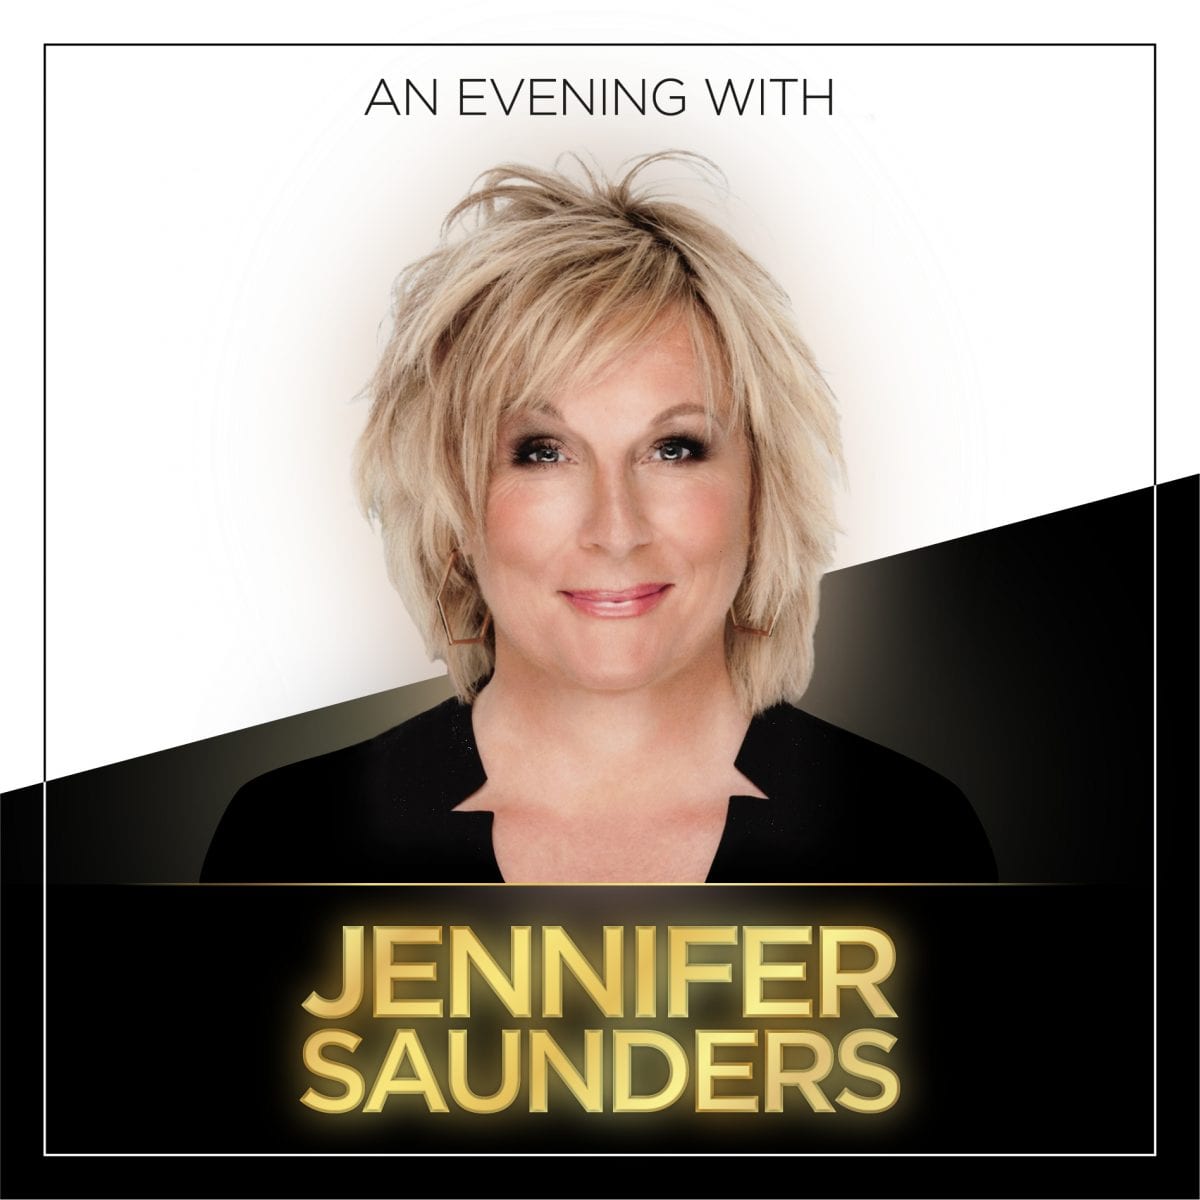 Jennifer saunders images